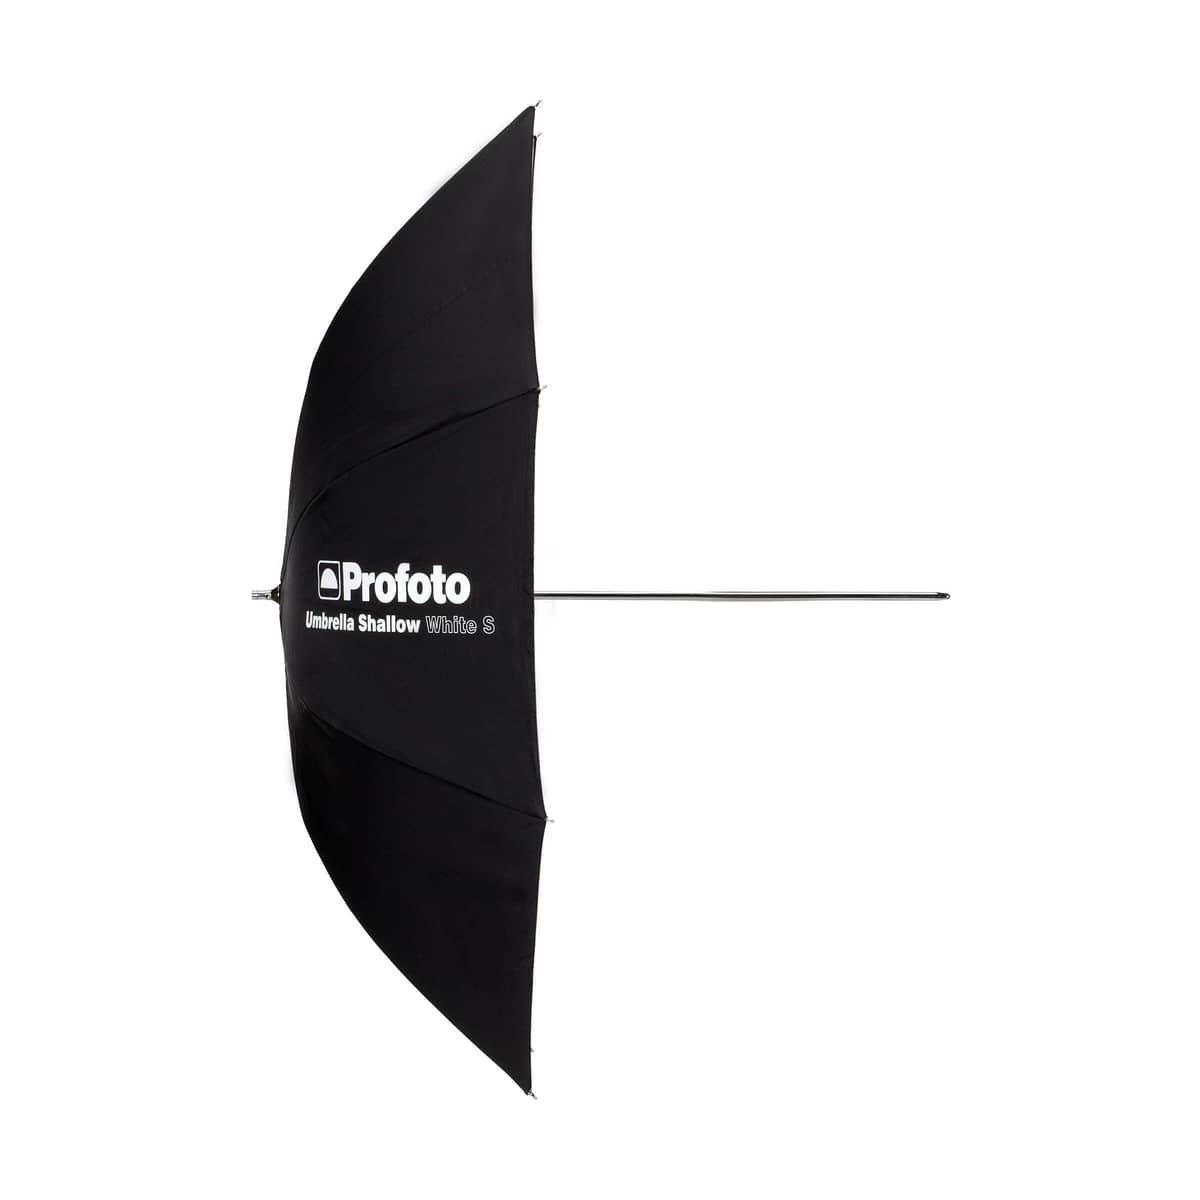 profoto_umbrella_shallow_white_s_01